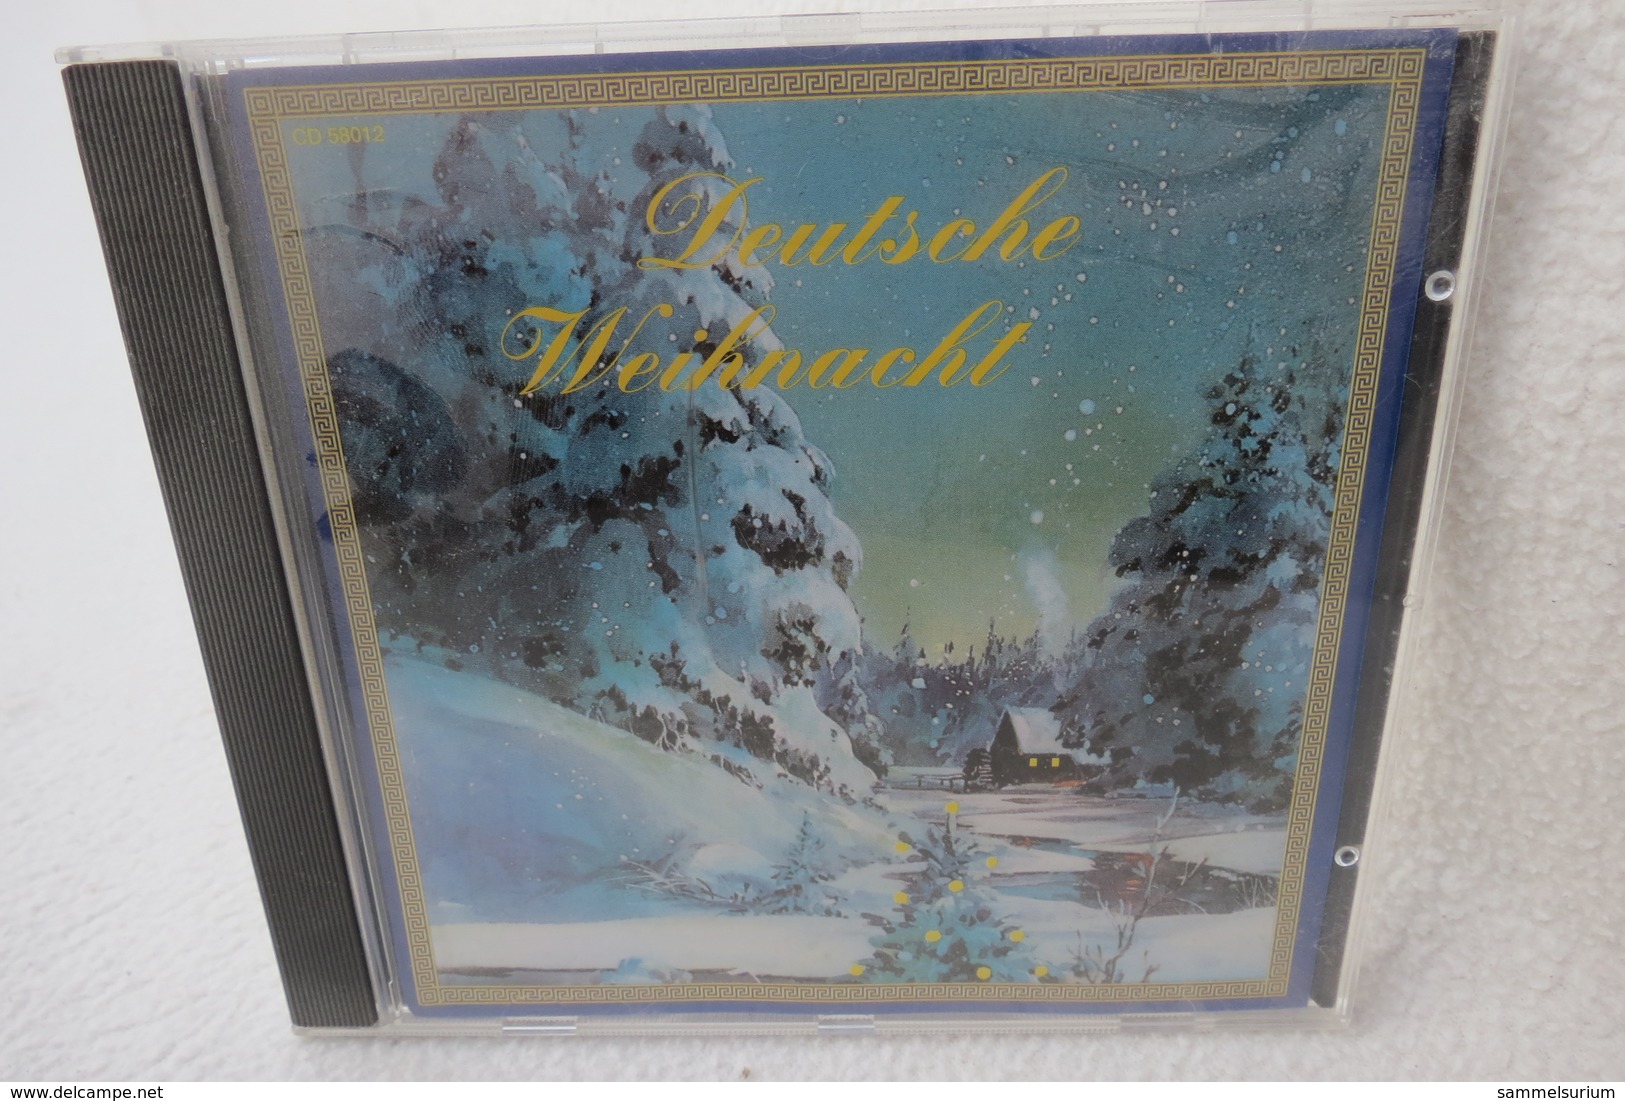 CD "Deutsche Weihnacht 1" - Christmas Carols